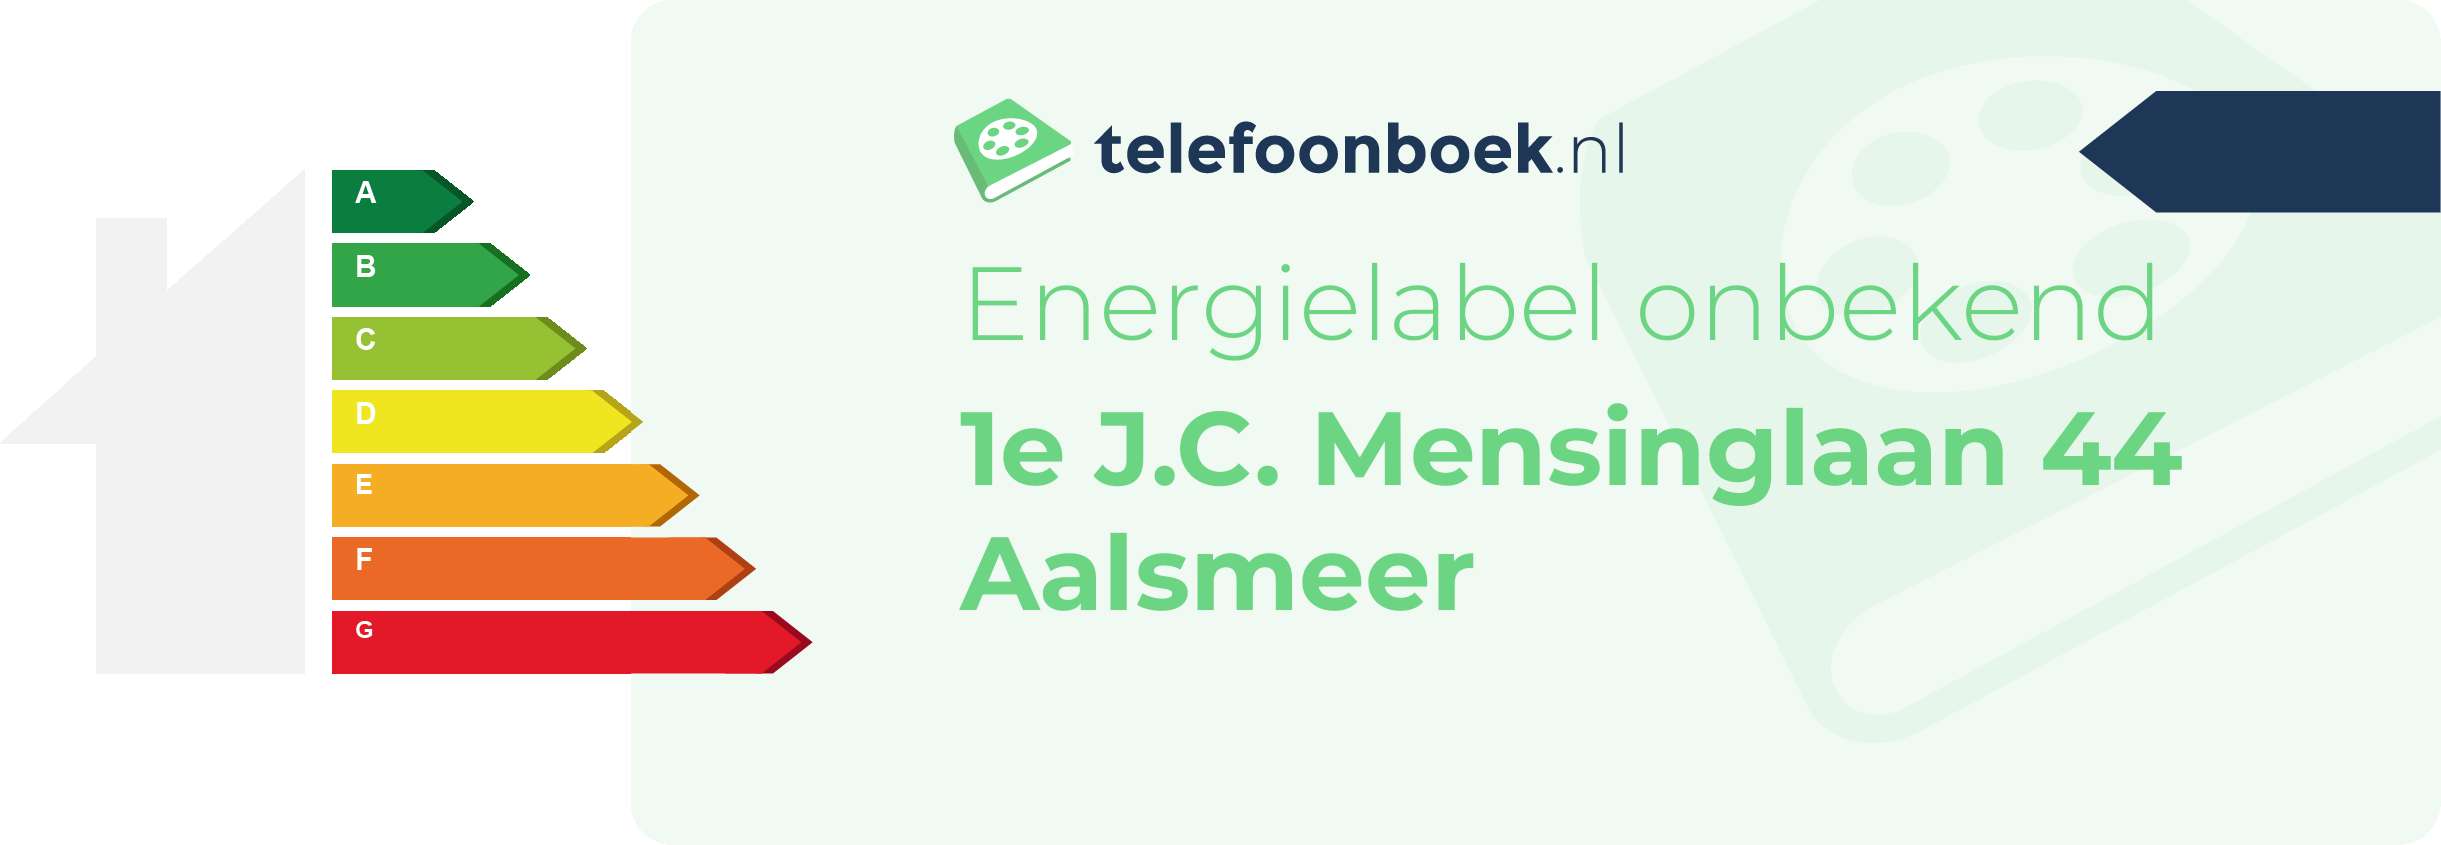 Energielabel 1e J.C. Mensinglaan 44 Aalsmeer